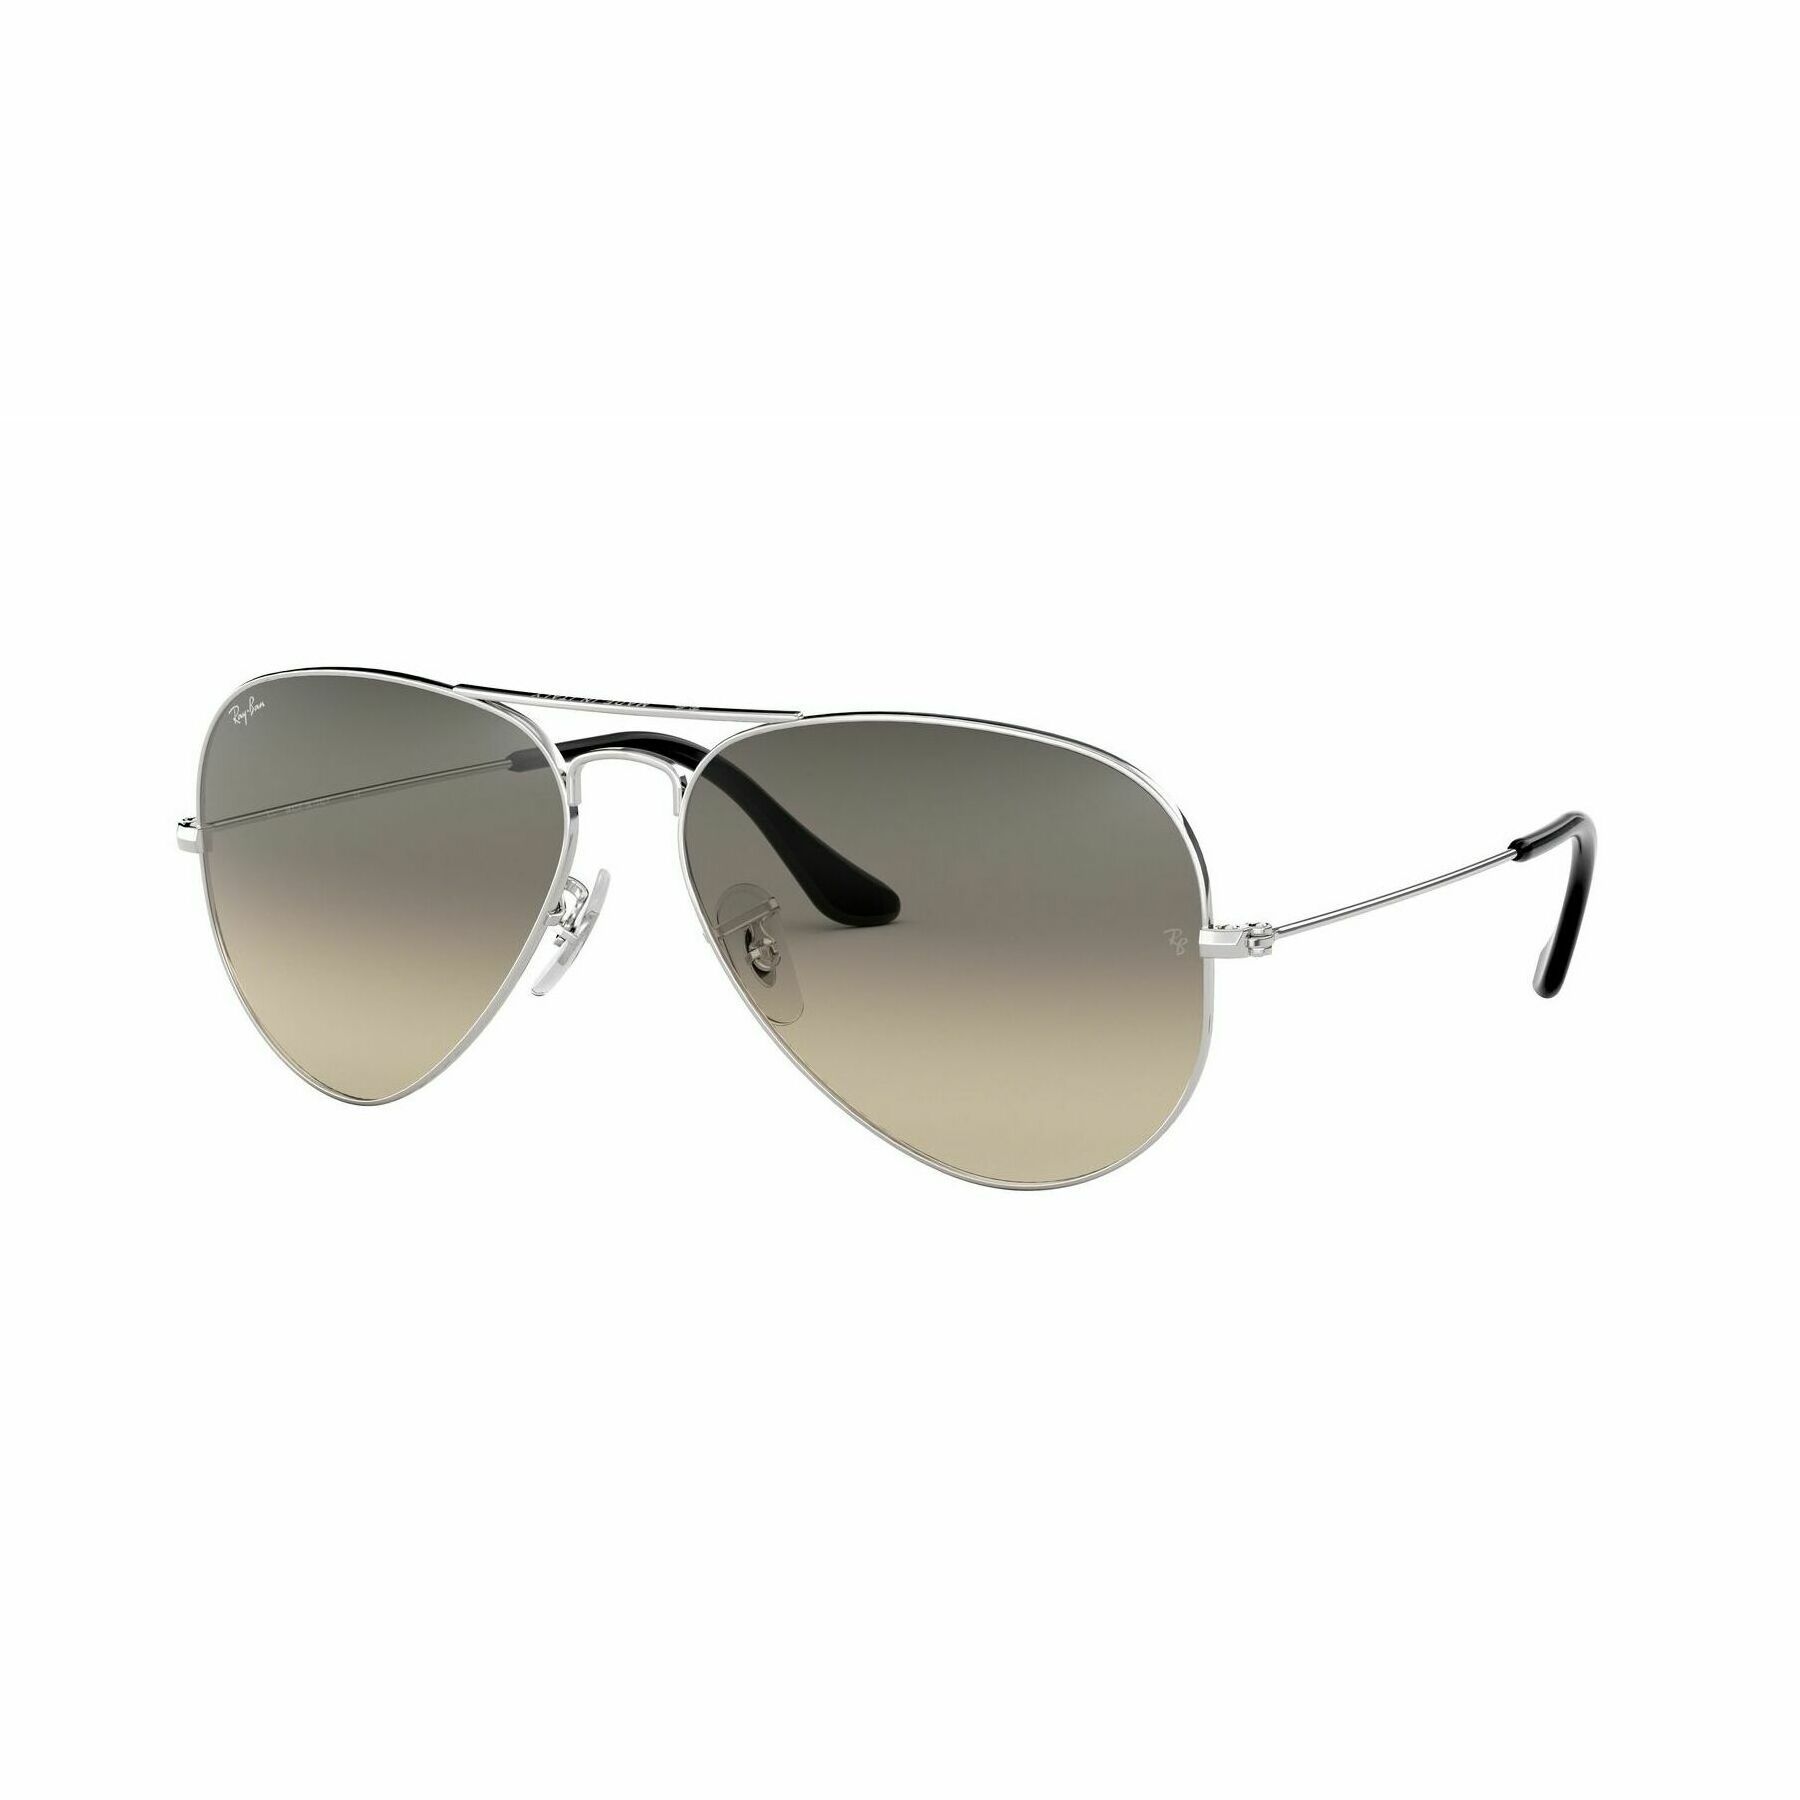 RB3025 Pilot Sunglasses 003 32 - size 55